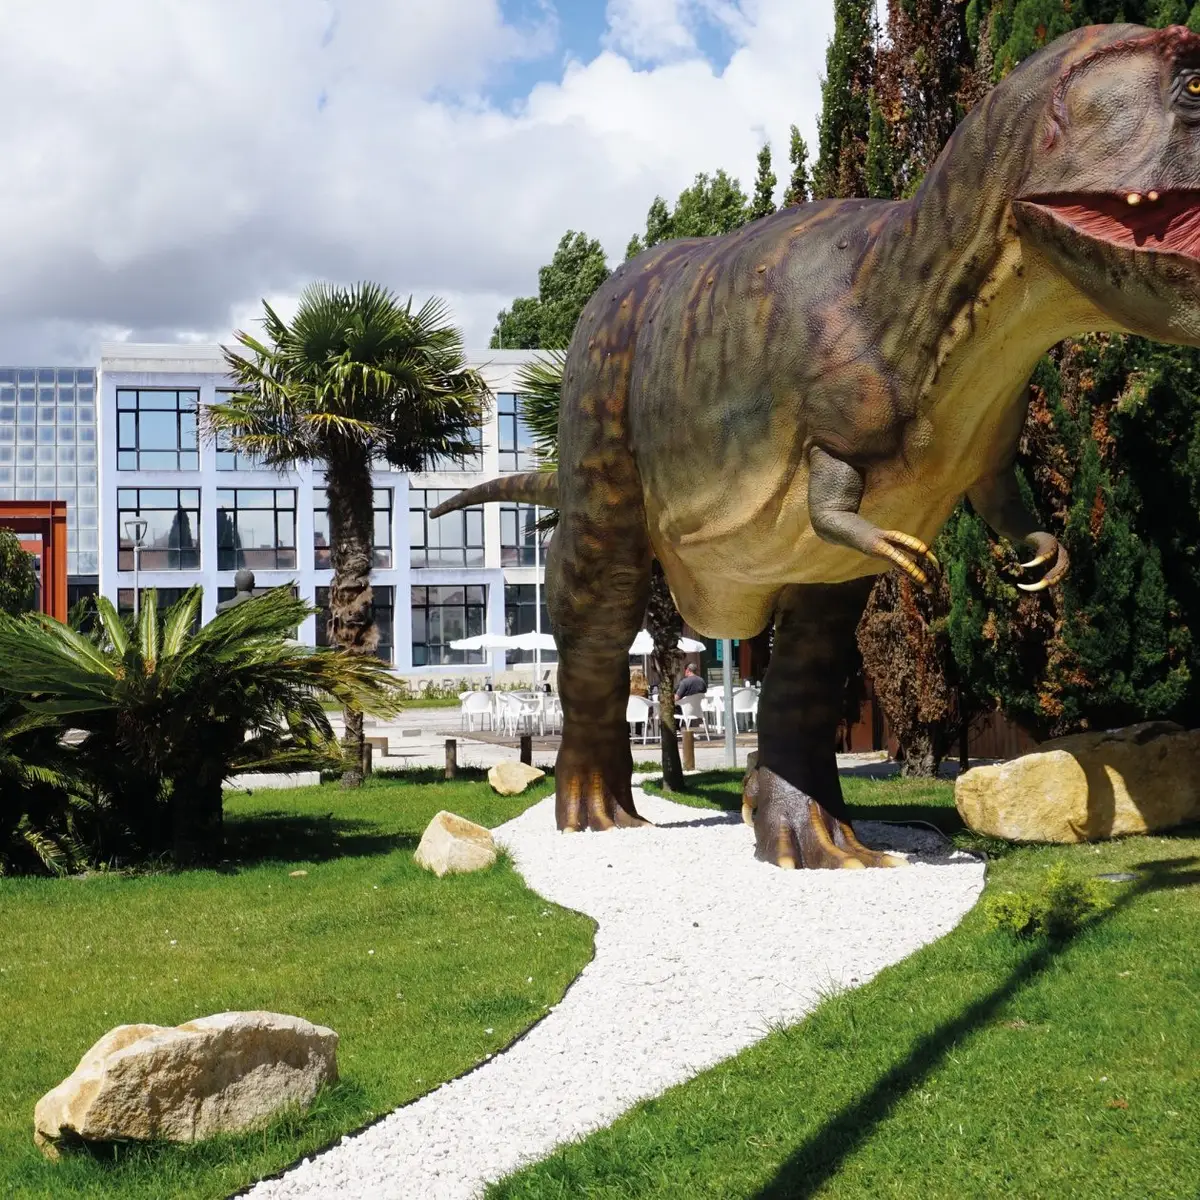 Fuga dos dinossauros jogo, parque dos dinossauros, dinosaur park